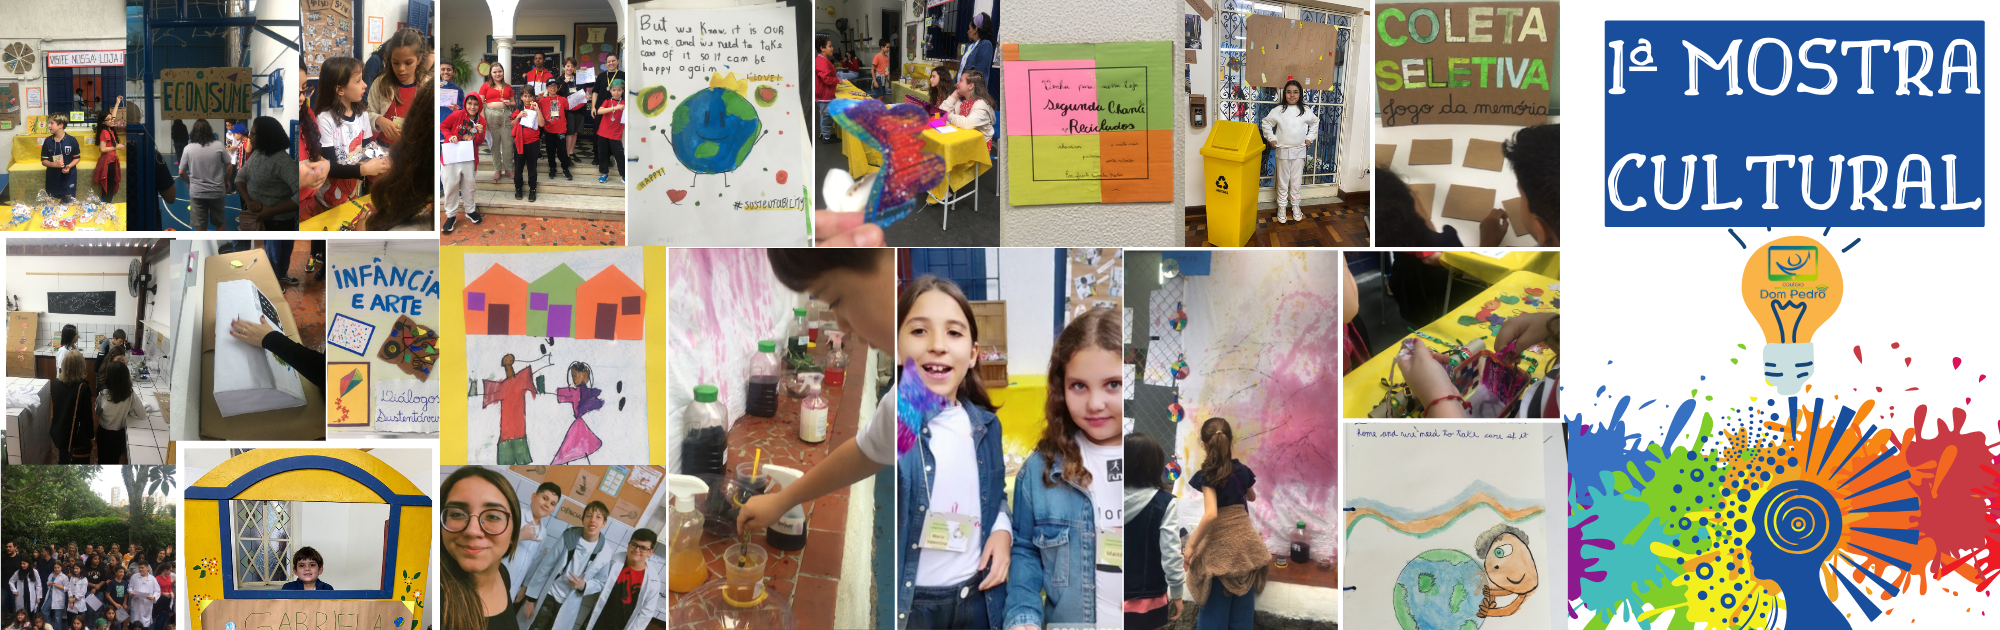 Arte e Sustentabilidade na Escola: I Mostra Cultural do Colégio Dom Pedro